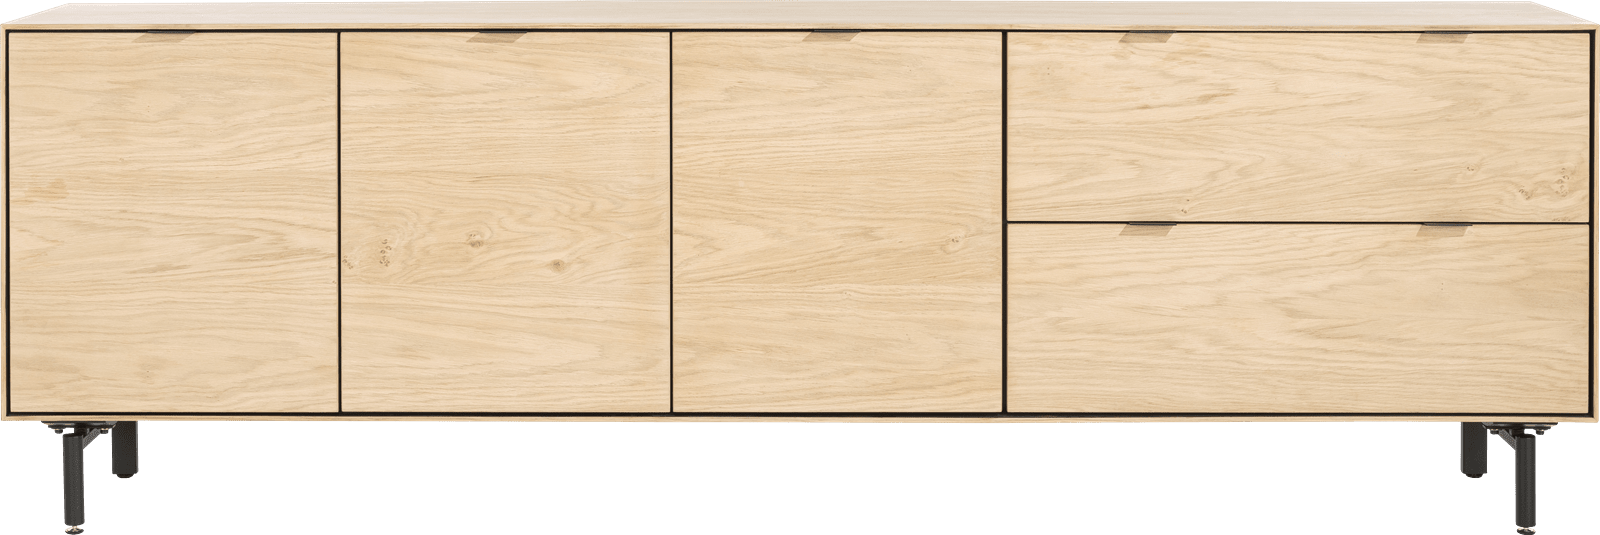 XOOON - Elements - Minimalistisches Design - Sideboard 240 cm - 3-Teuren + 2-Laden